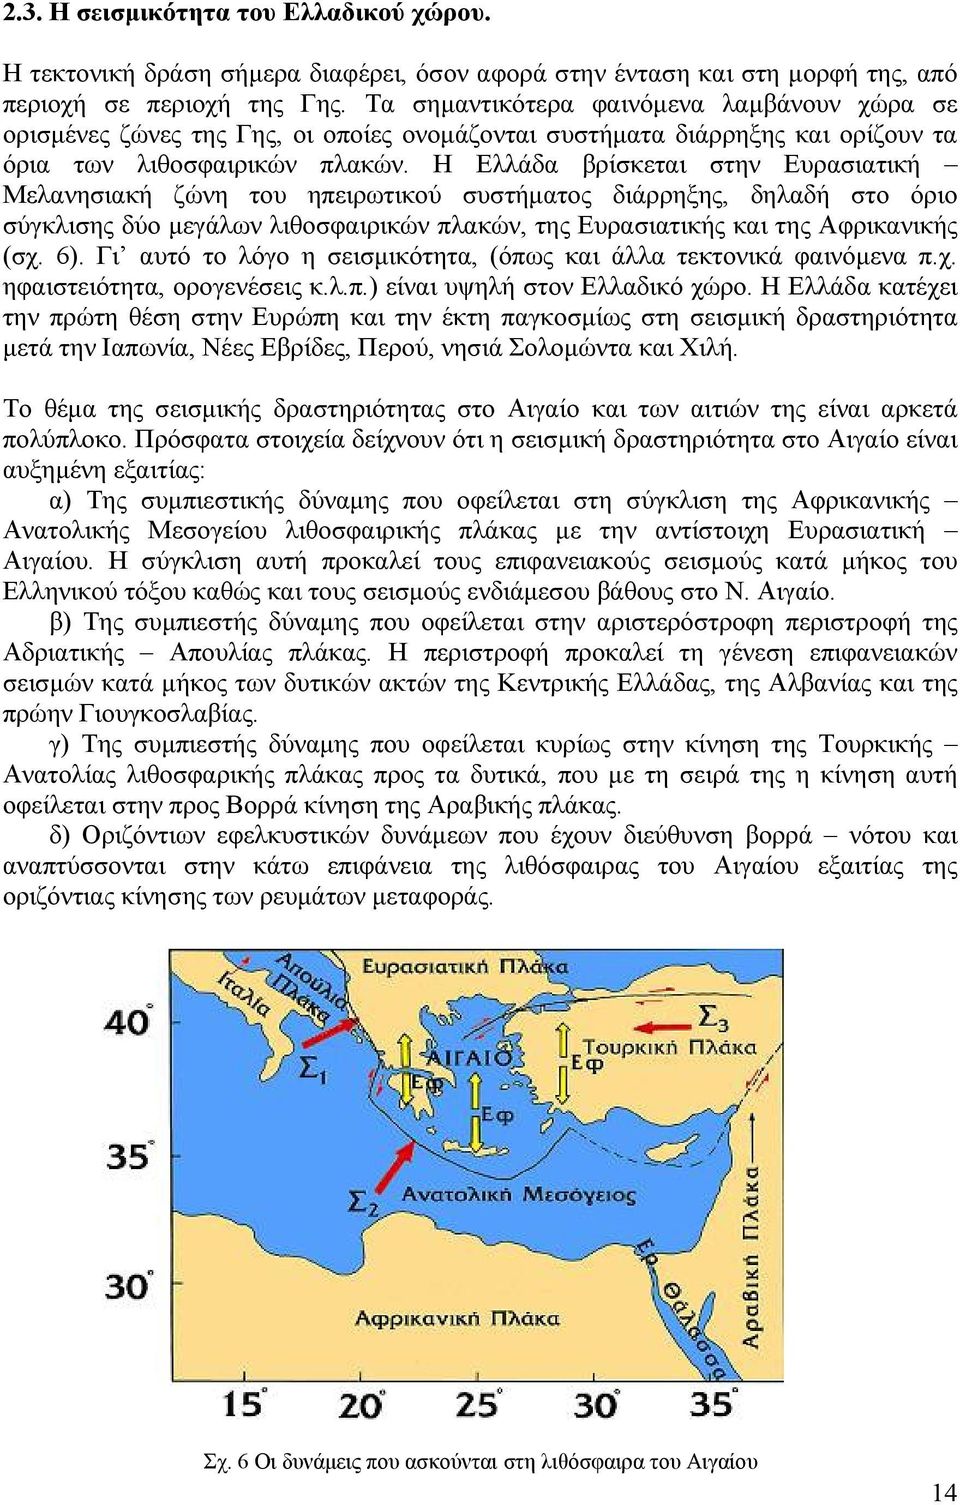 Η Ελλάδα βρίσκεται στην Ευρασιατική Μελανησιακή ζώνη του ηπειρωτικού συστήματος διάρρηξης, δηλαδή στο όριο σύγκλισης δύο μεγάλων λιθοσφαιρικών πλακών, της Ευρασιατικής και της Αφρικανικής (σχ. 6).